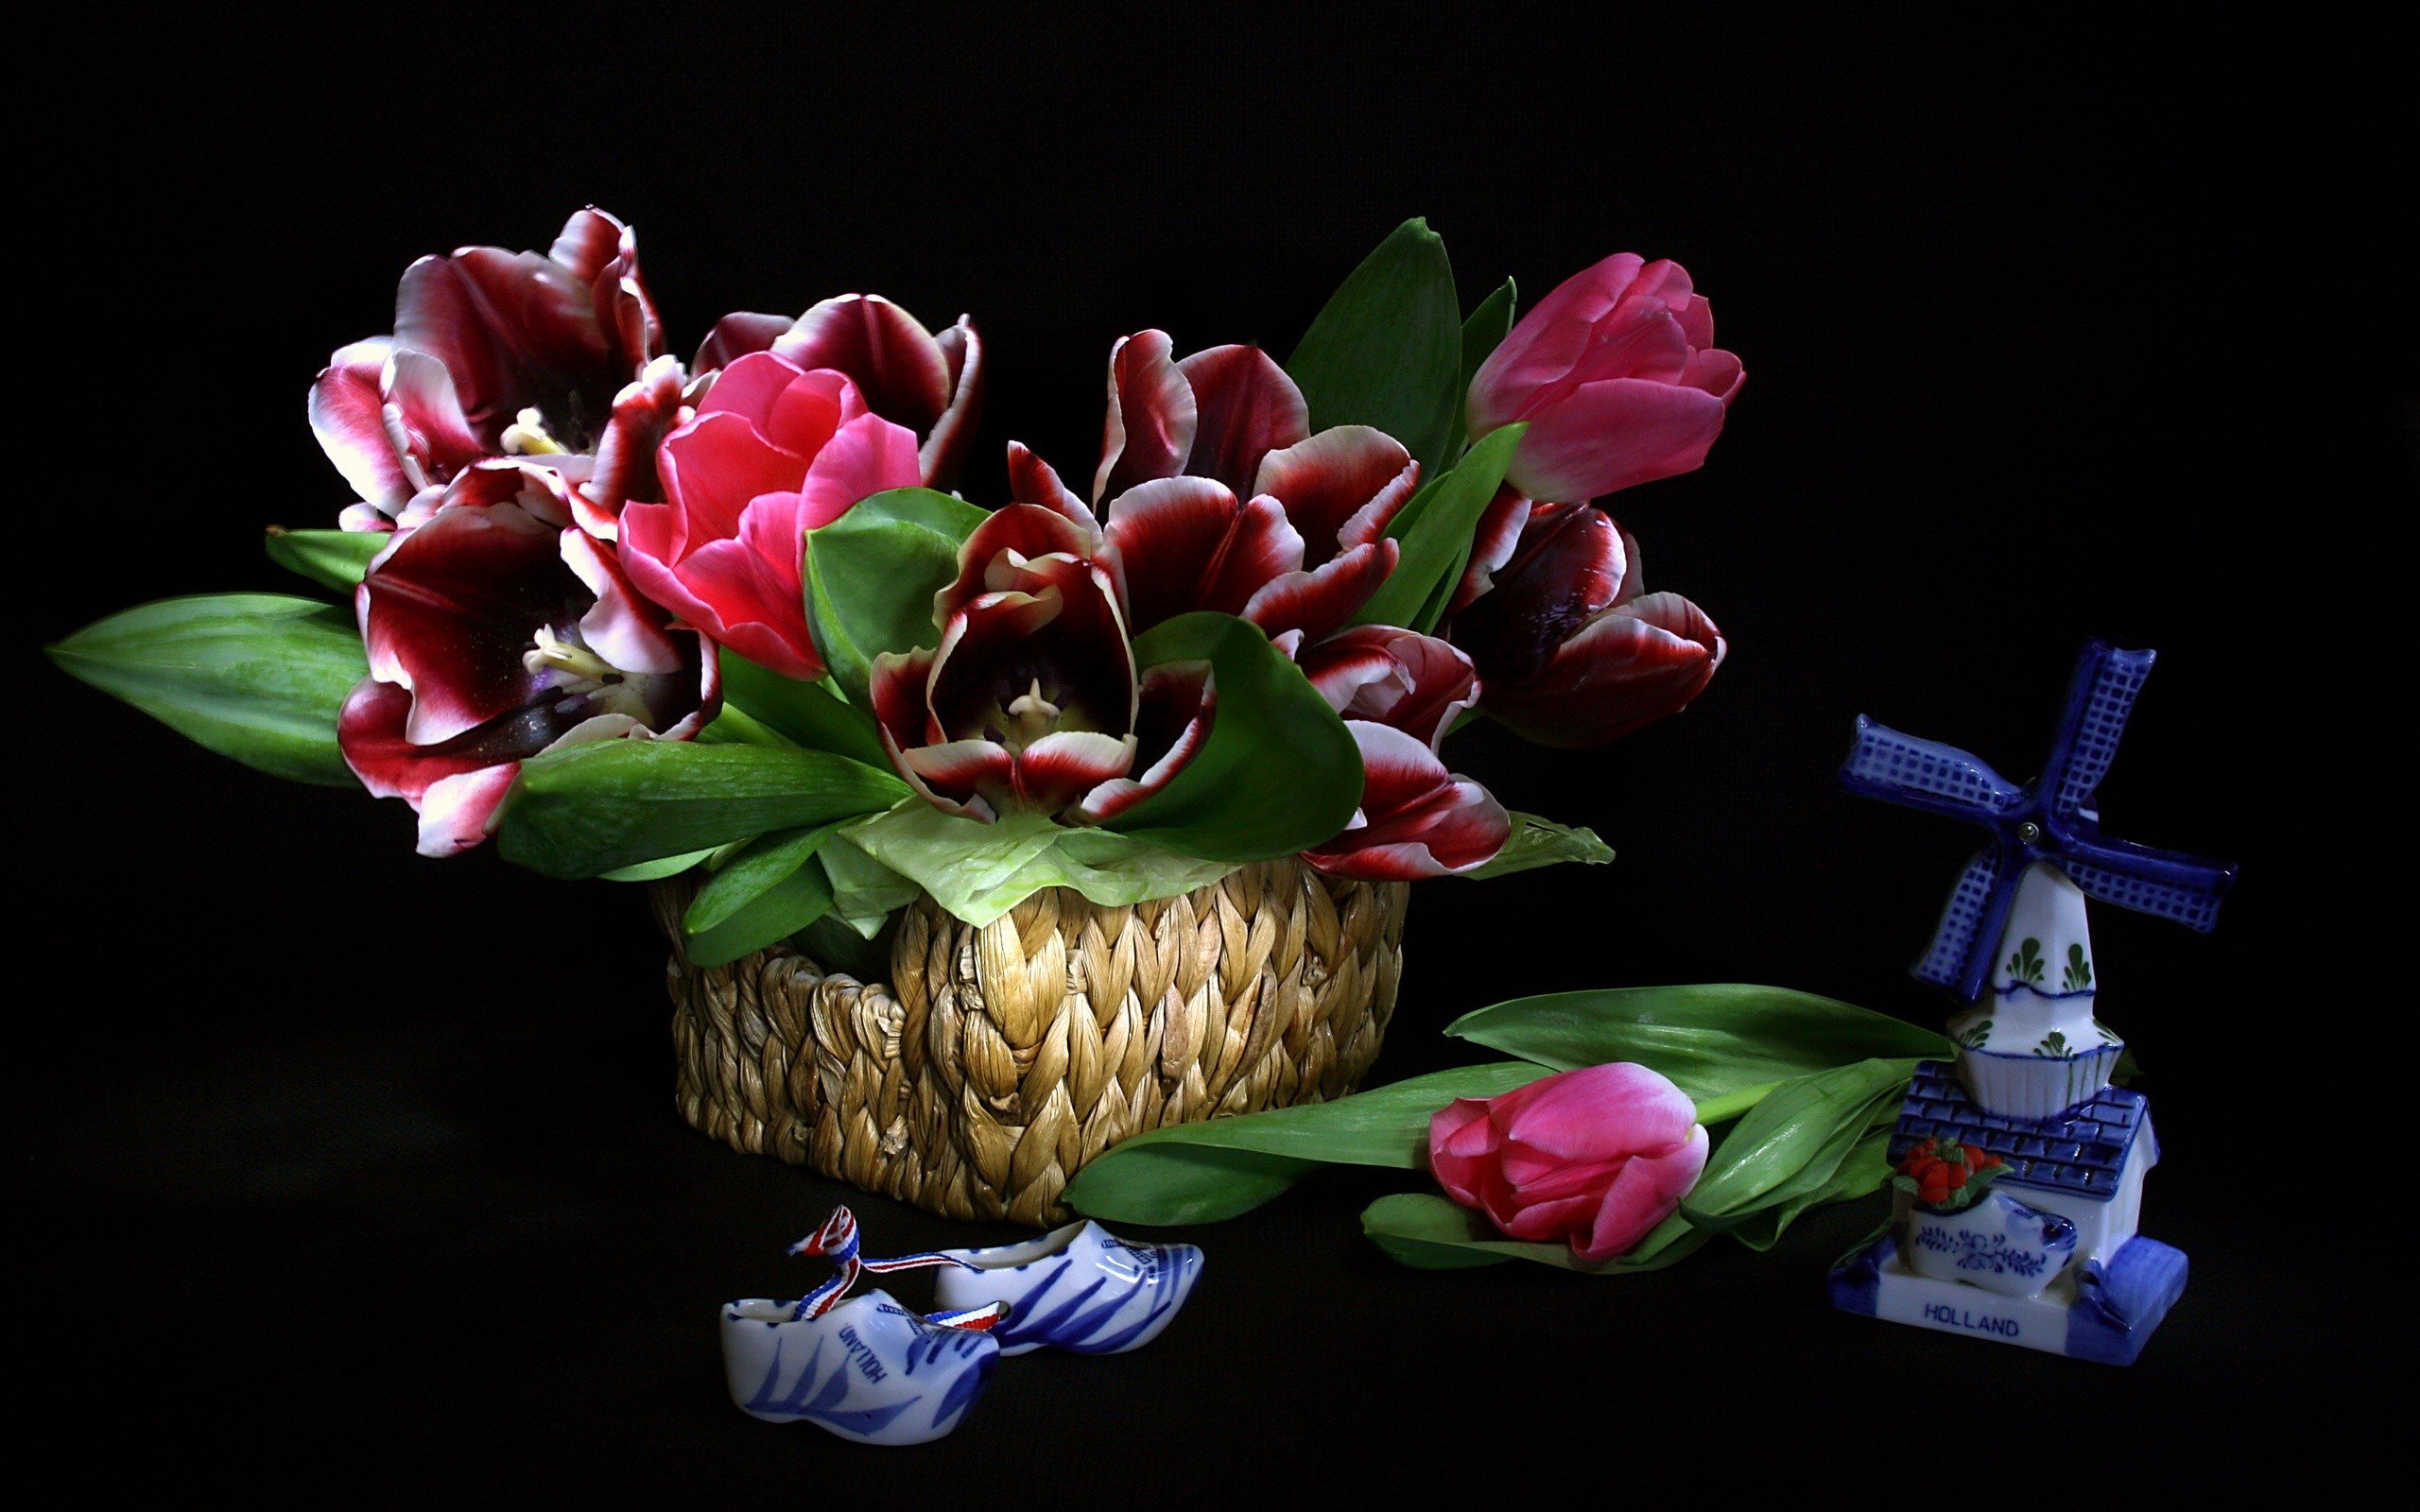 Descarga gratuita de fondo de pantalla para móvil de Flor, Cesta, Tulipán, Fotografía, Flor Purpura, Bodegón.